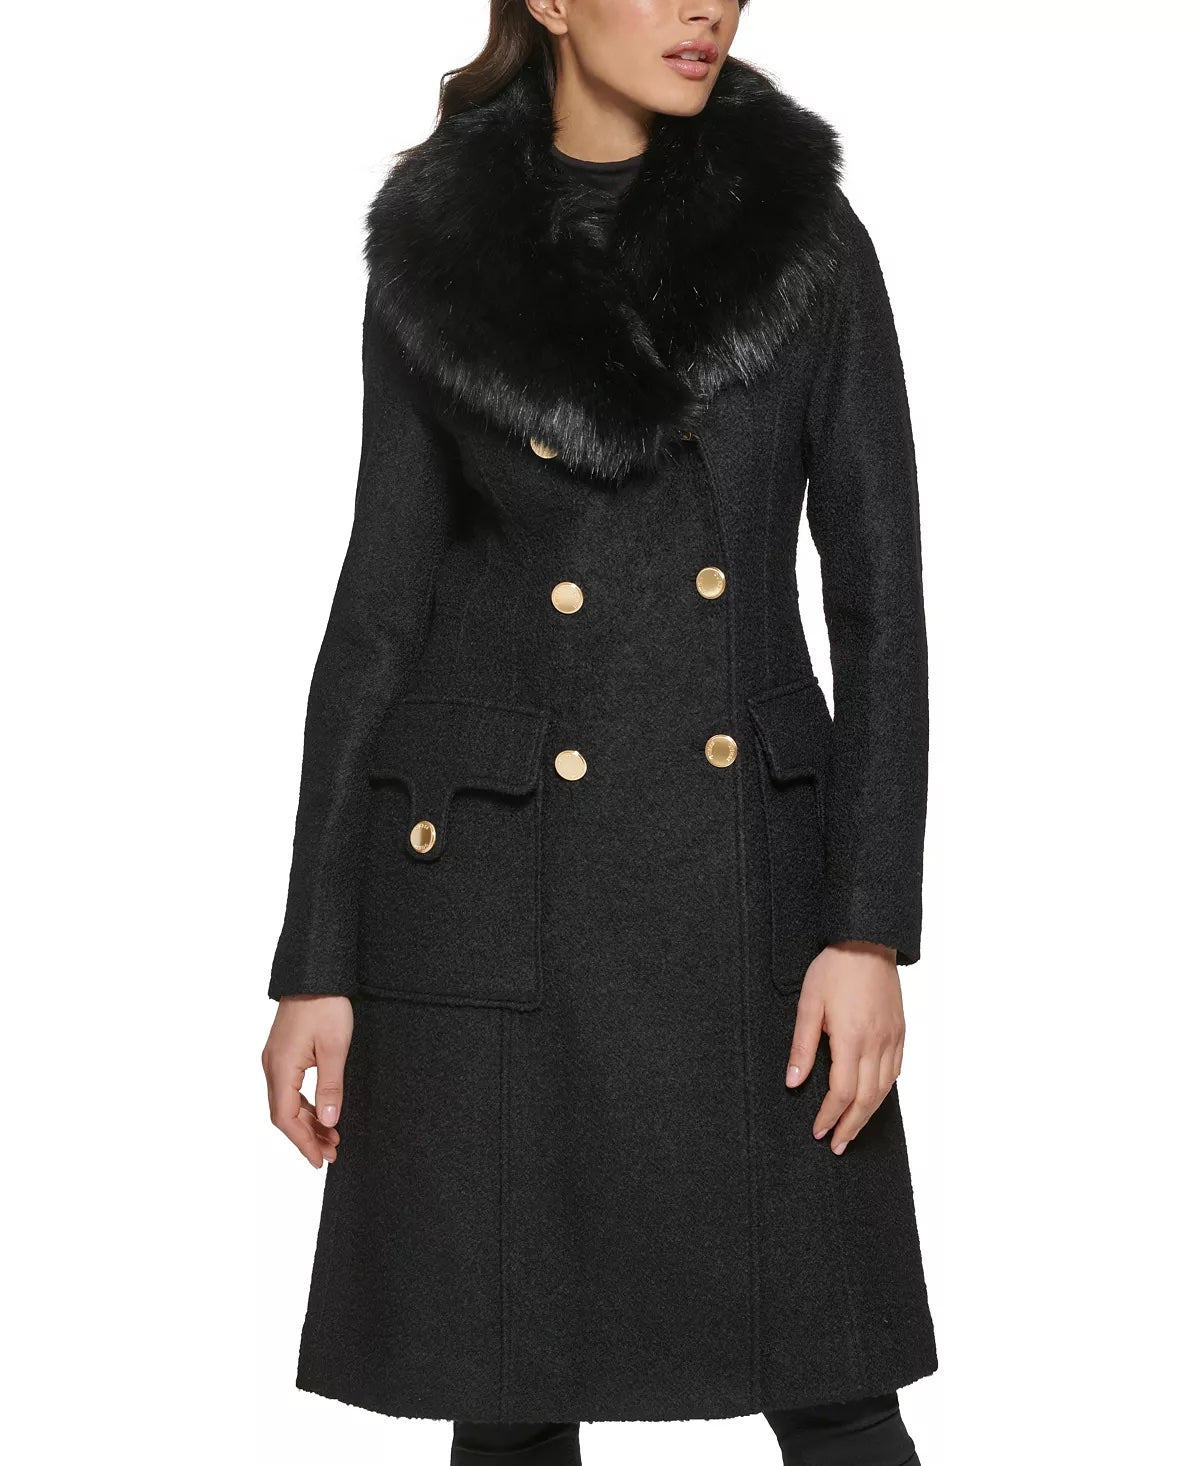 GUESS Women's Plus Size Long Double-Breasted Walker Coat 3X Black